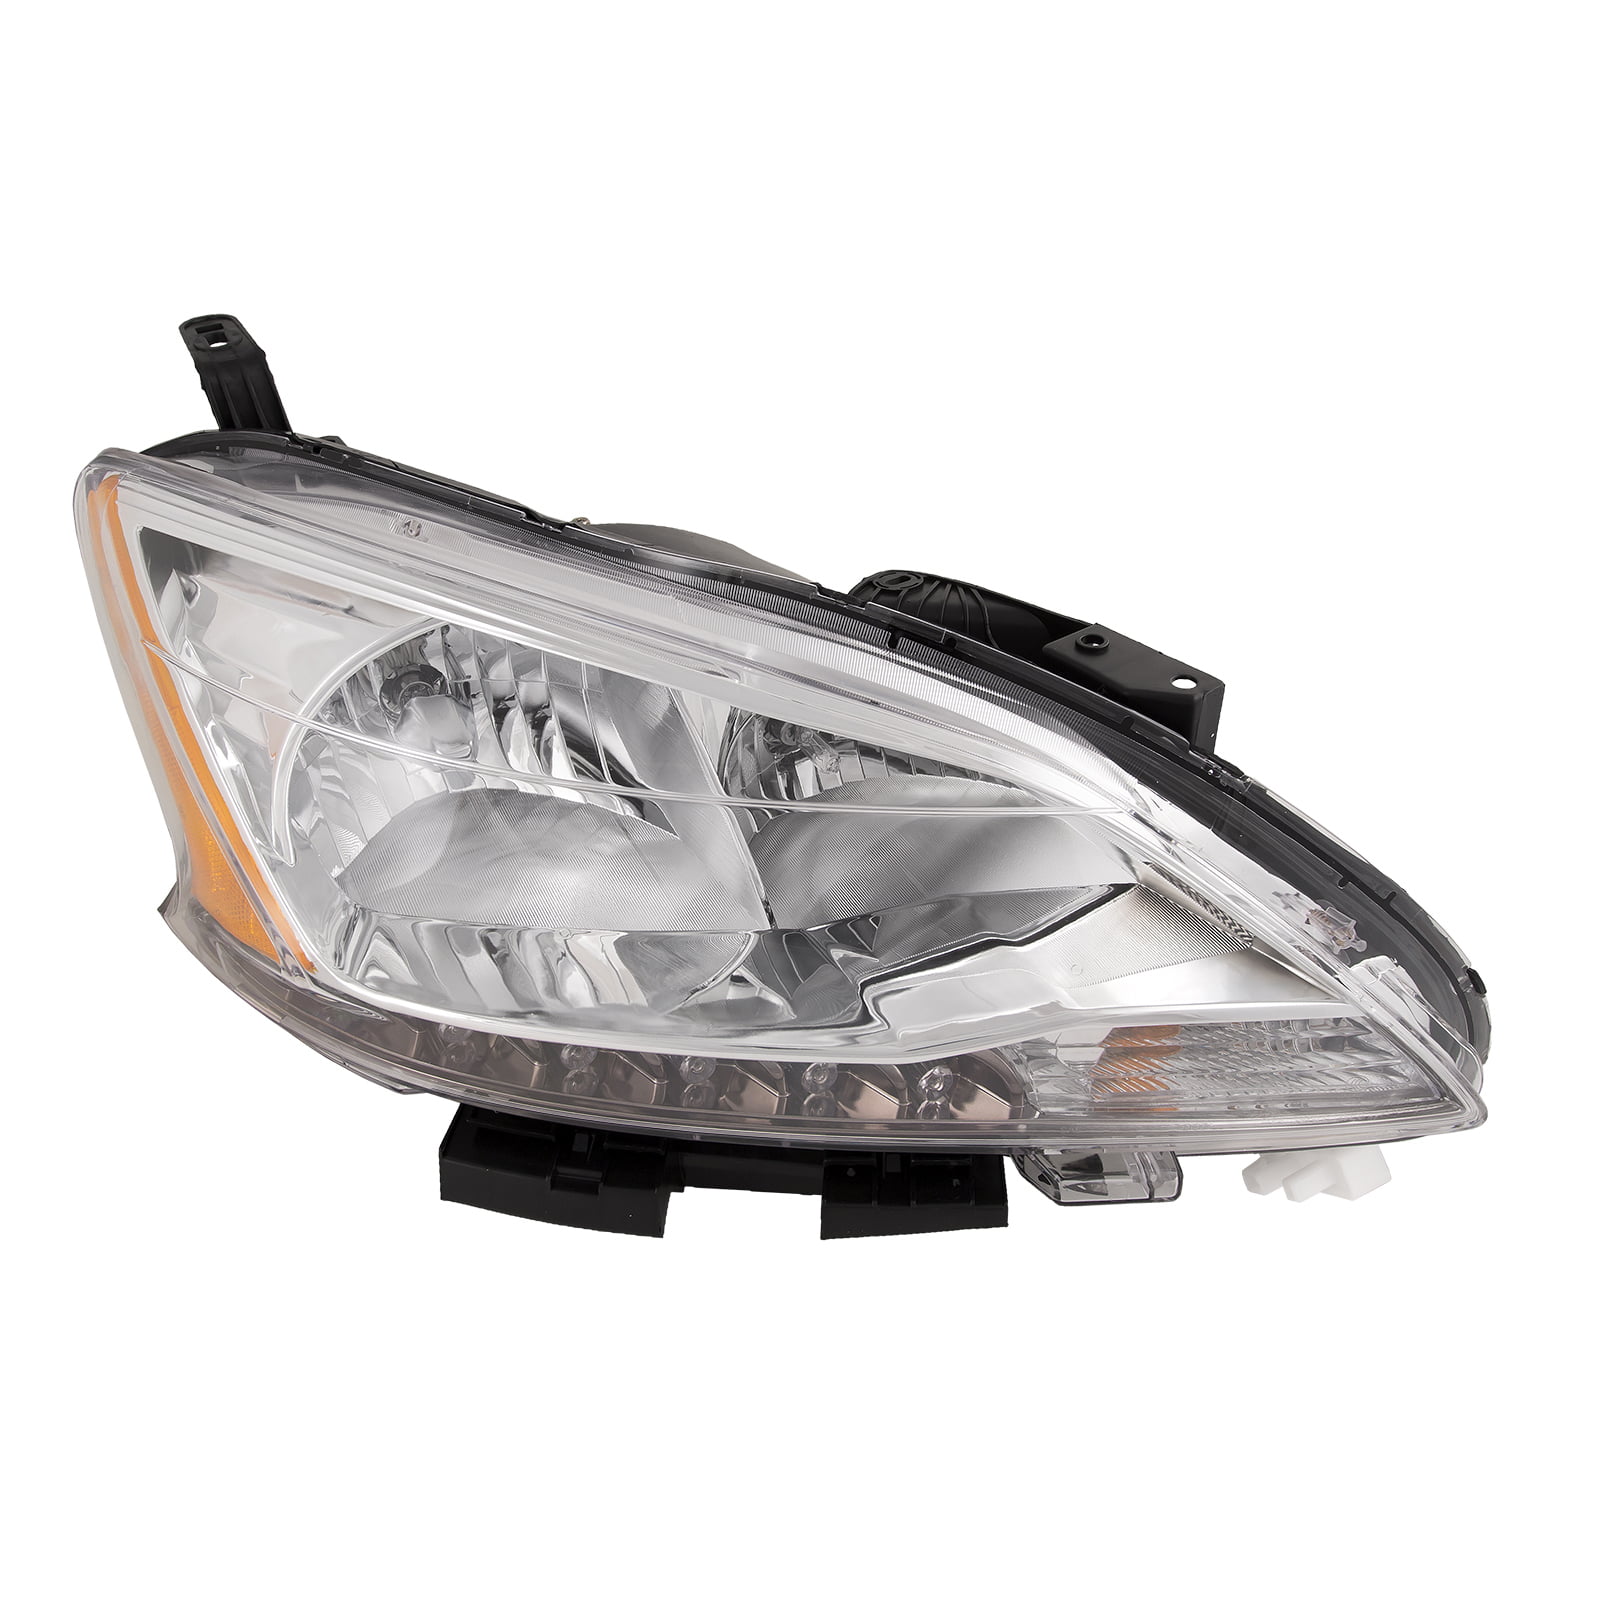 Headlight Lamp Mounting Bracket Left Side for Nissan Sentra 2013-2015